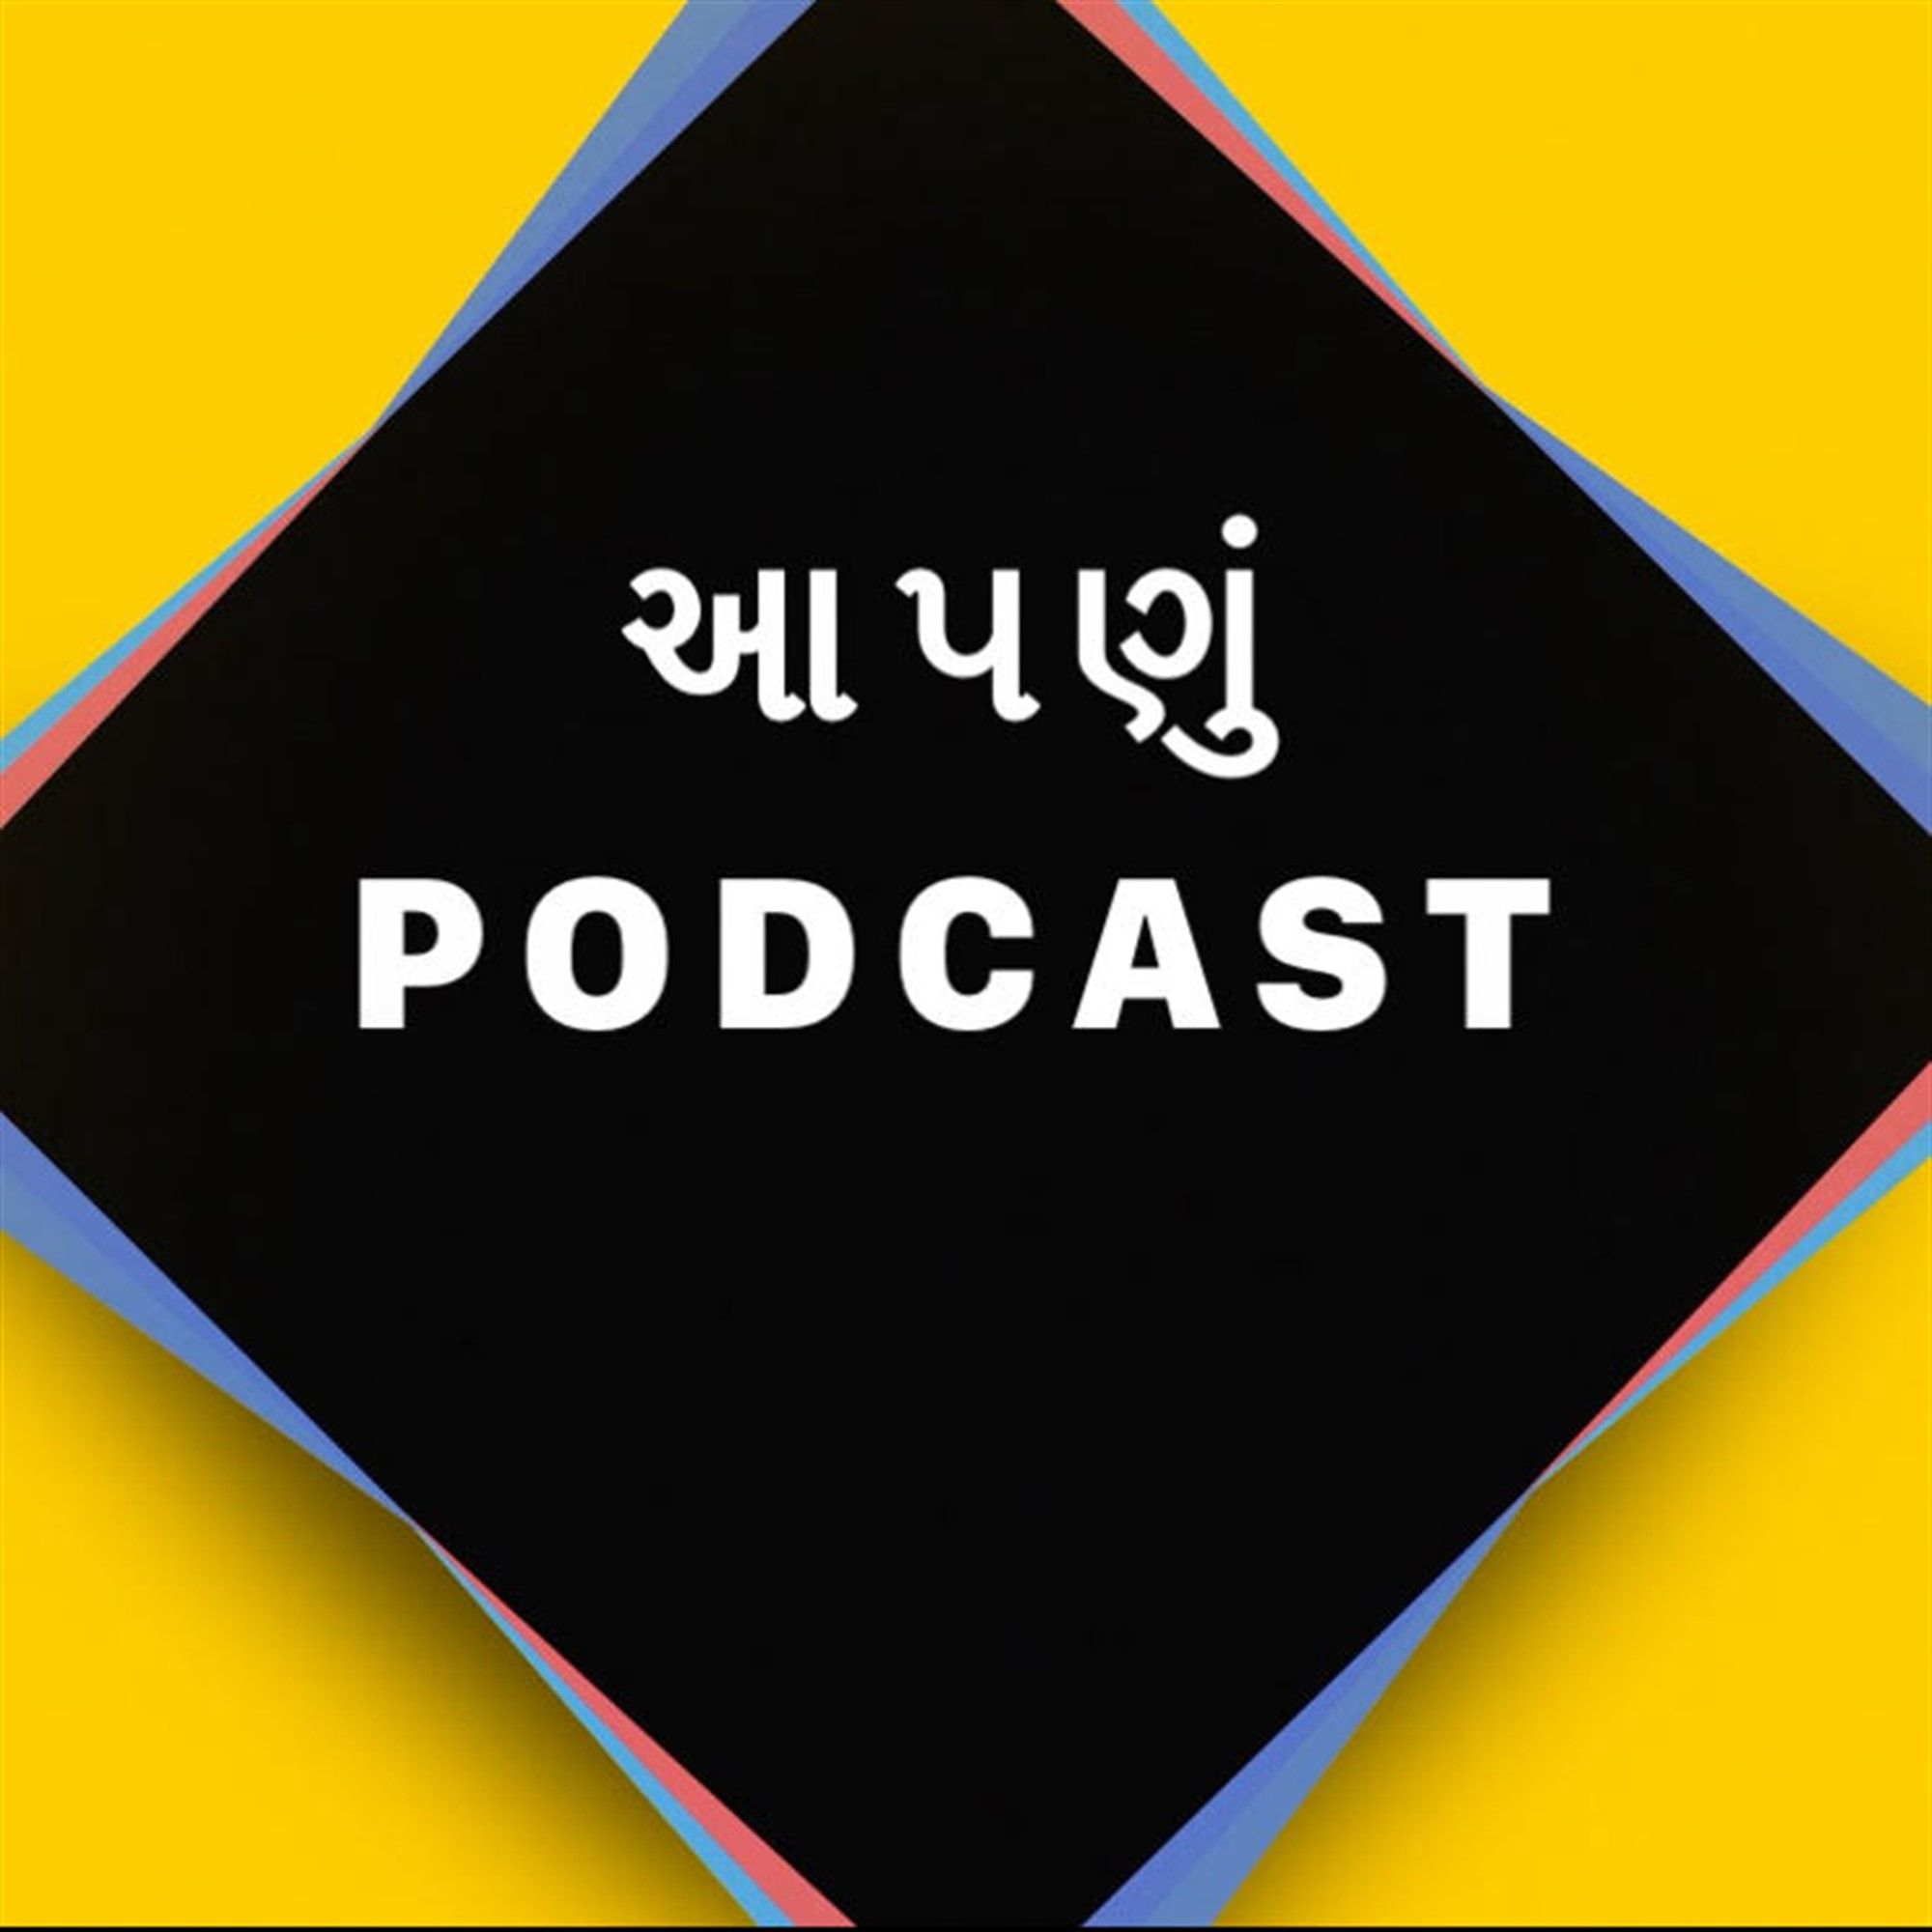 Aapdu Podcast Gujarati ma